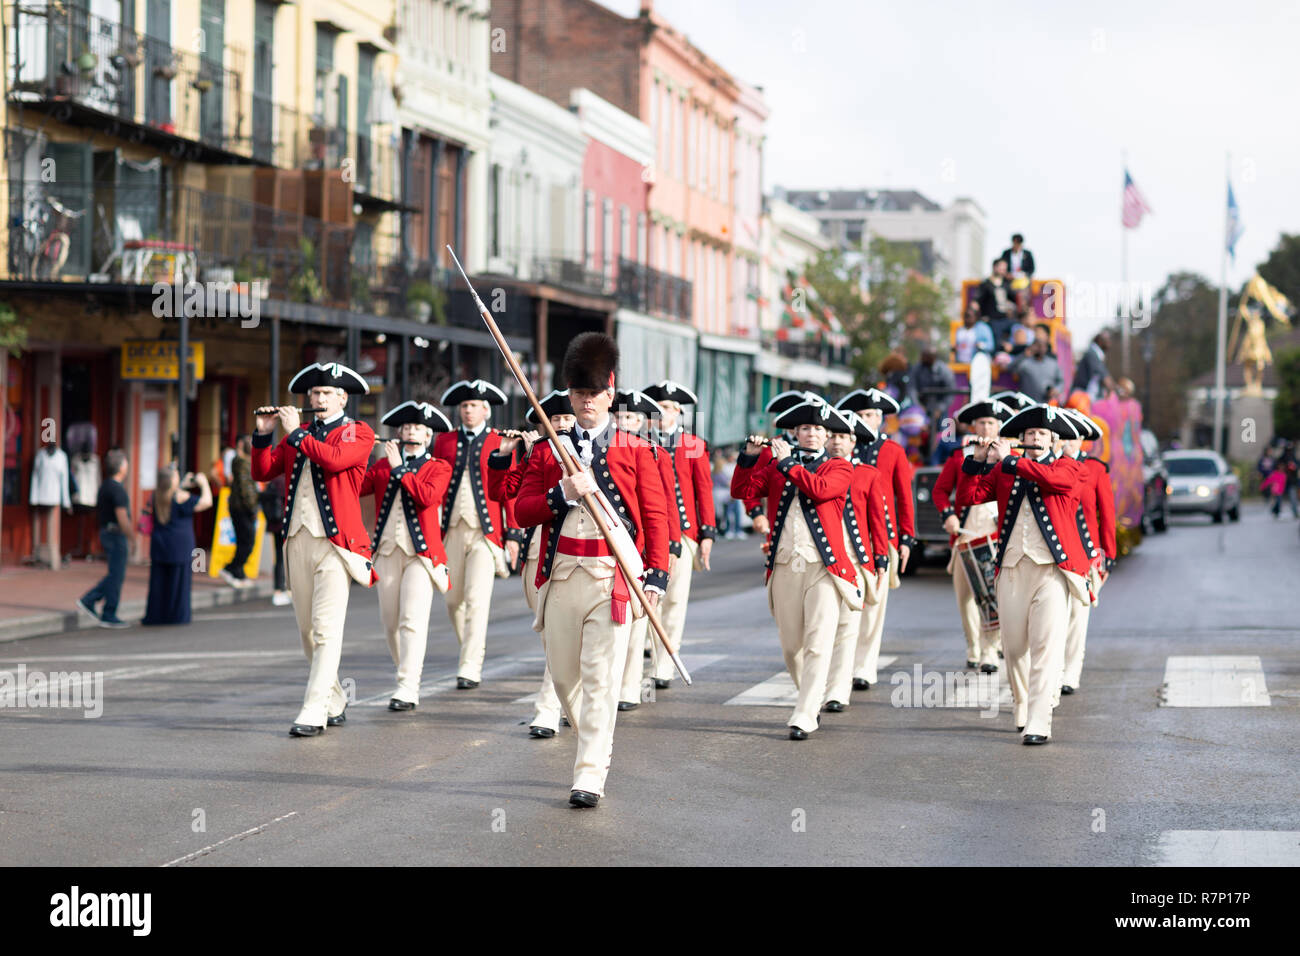 New Orleans, Louisiana USA - 24 Novembre 2018: il Bayou Classic Parade, vecchia guardia Fife e Drum Corps marching band indossando abiti tradizionali per Foto Stock